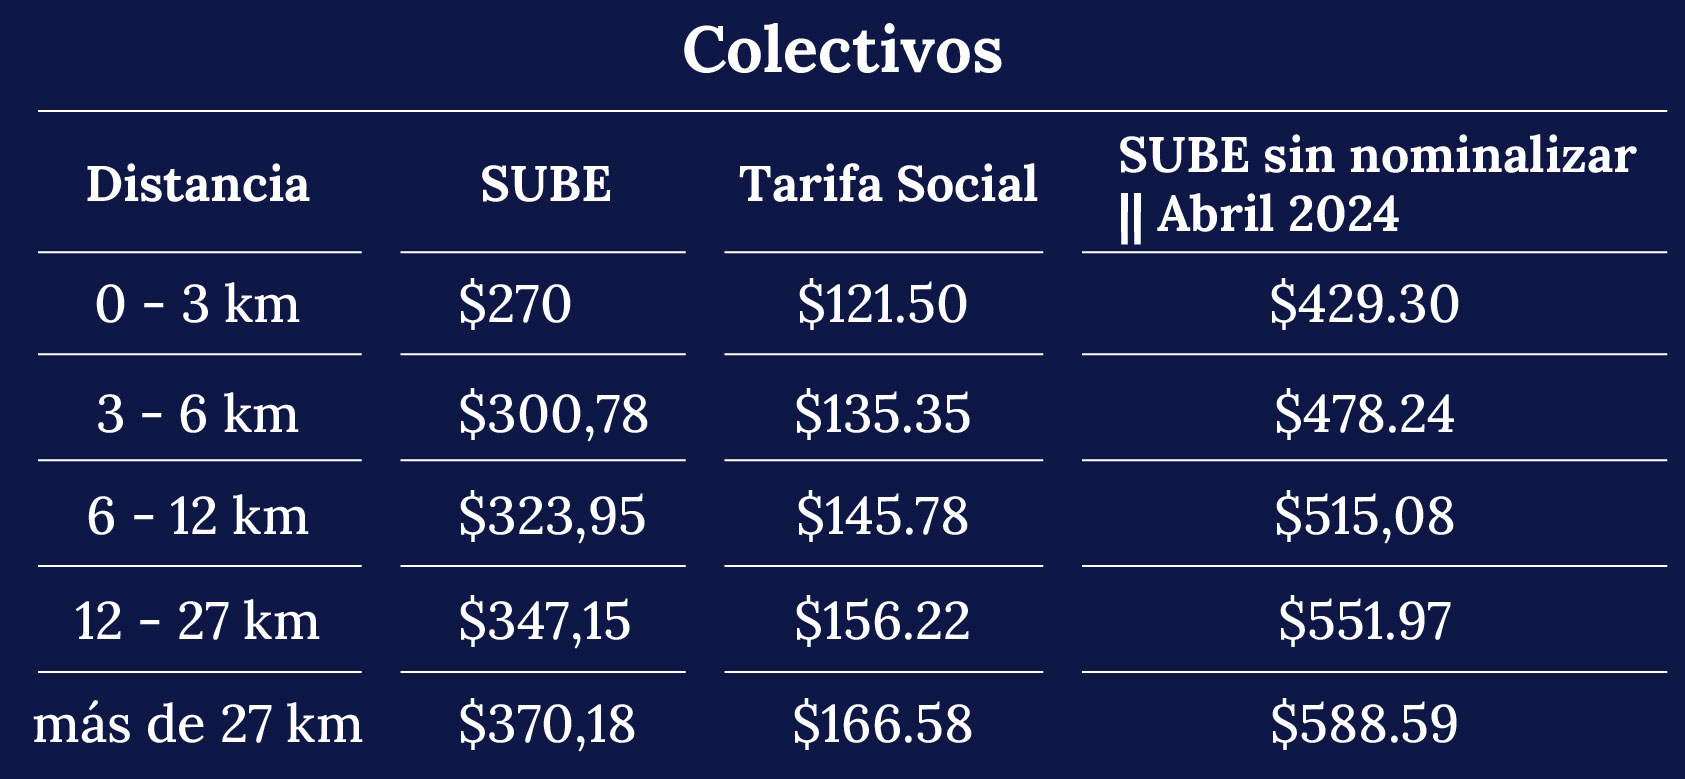 Cuadro tarifario colectivos - Febrero 2024